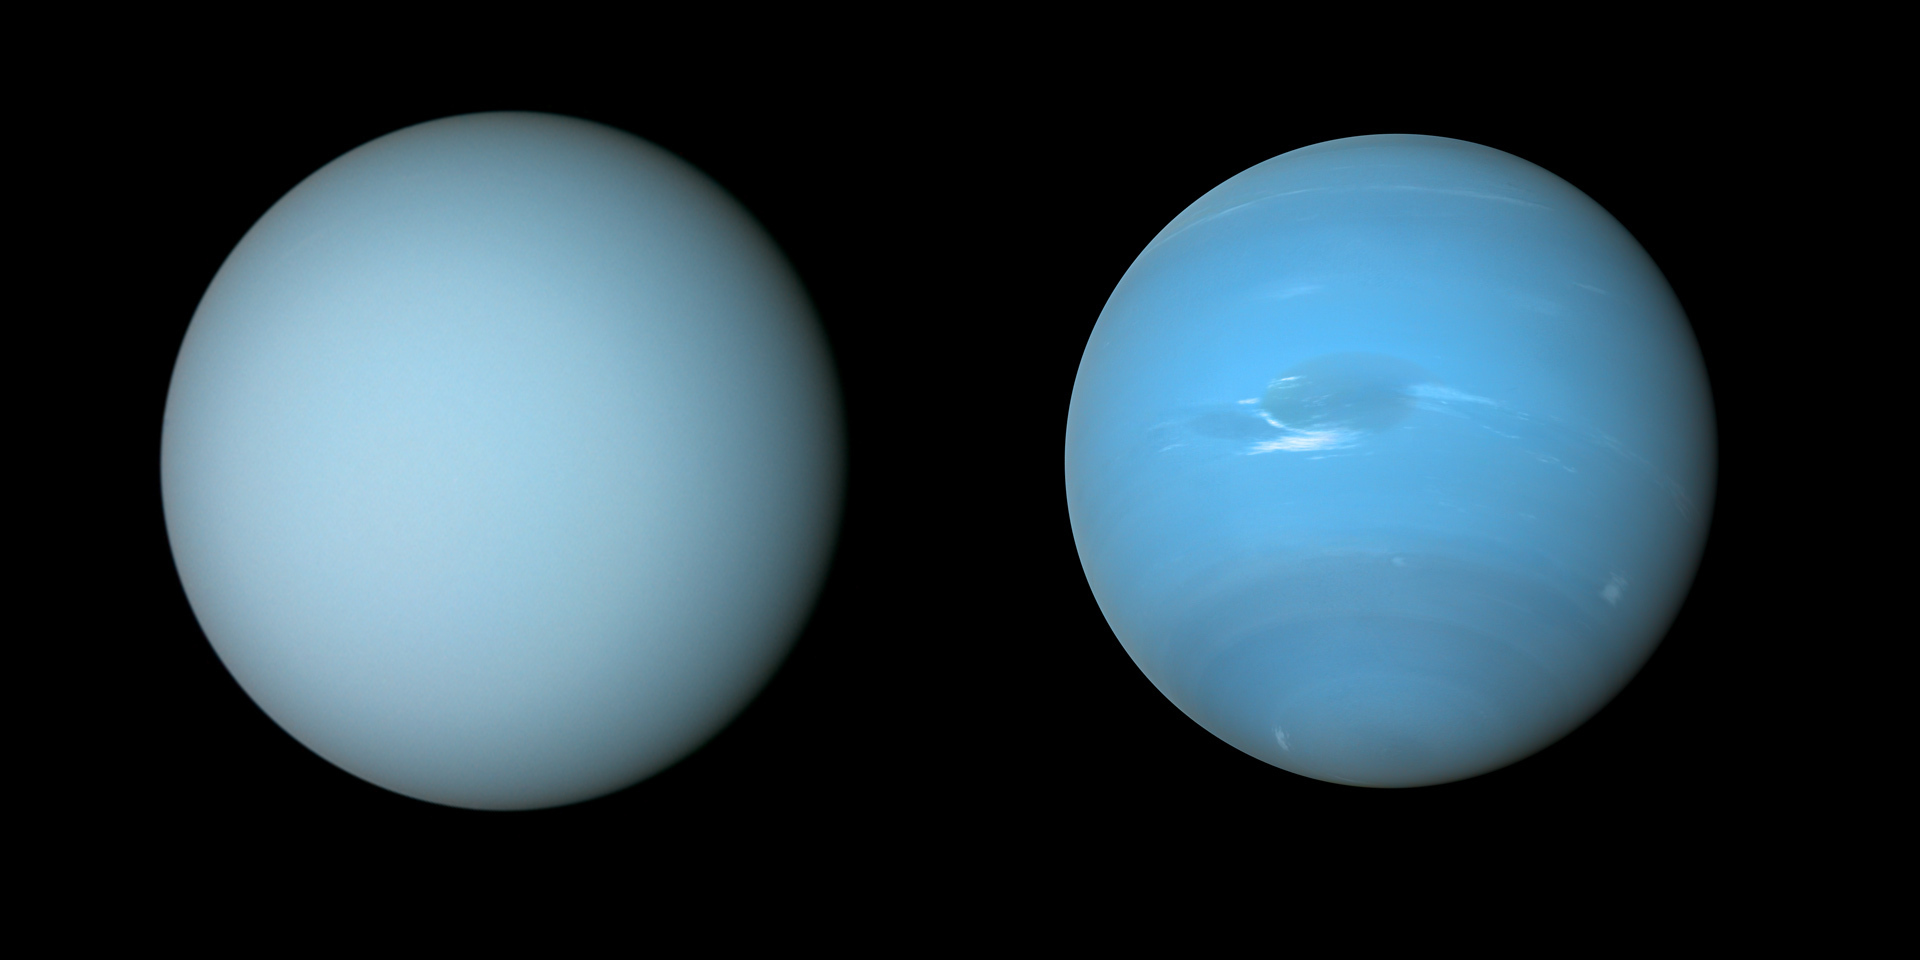 Уран Нептун